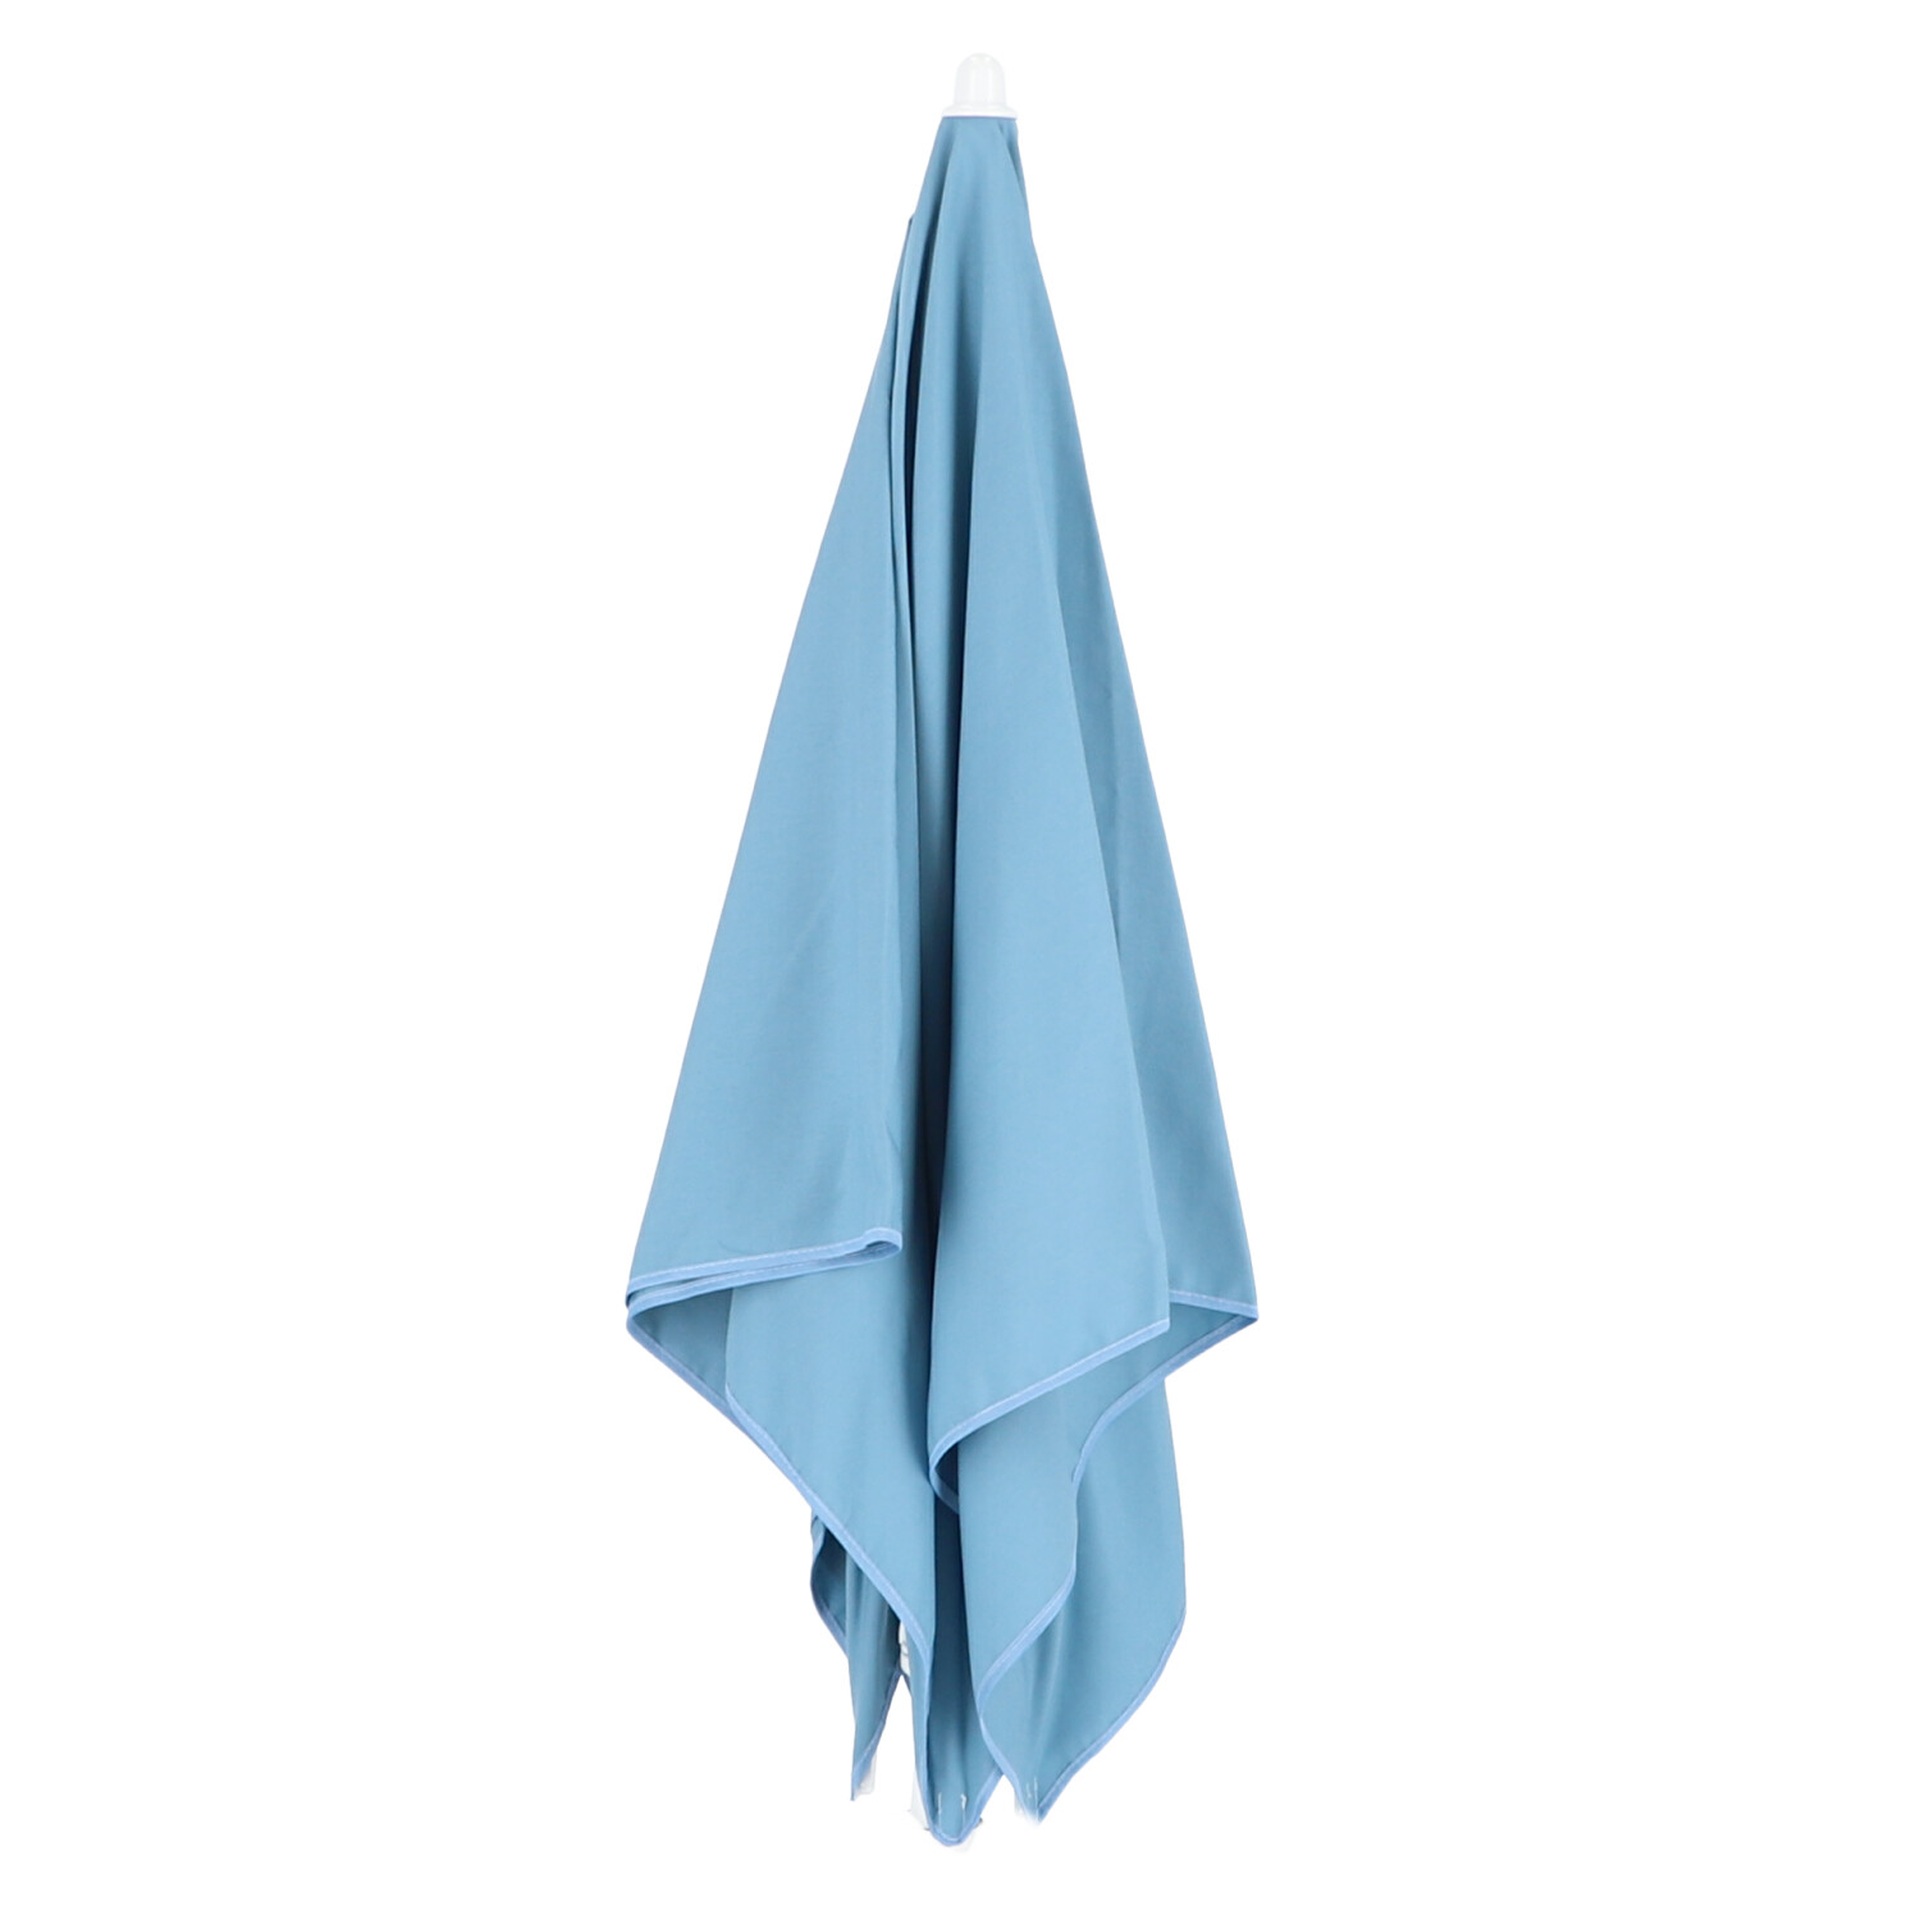 Der Sonnenschirm Murano überzeugt mit seinem modernen Design. Die Form des Schirms ist Eckig. Designet wurde er von der Marke Jan Kurtz und hat die Farbe Blau.